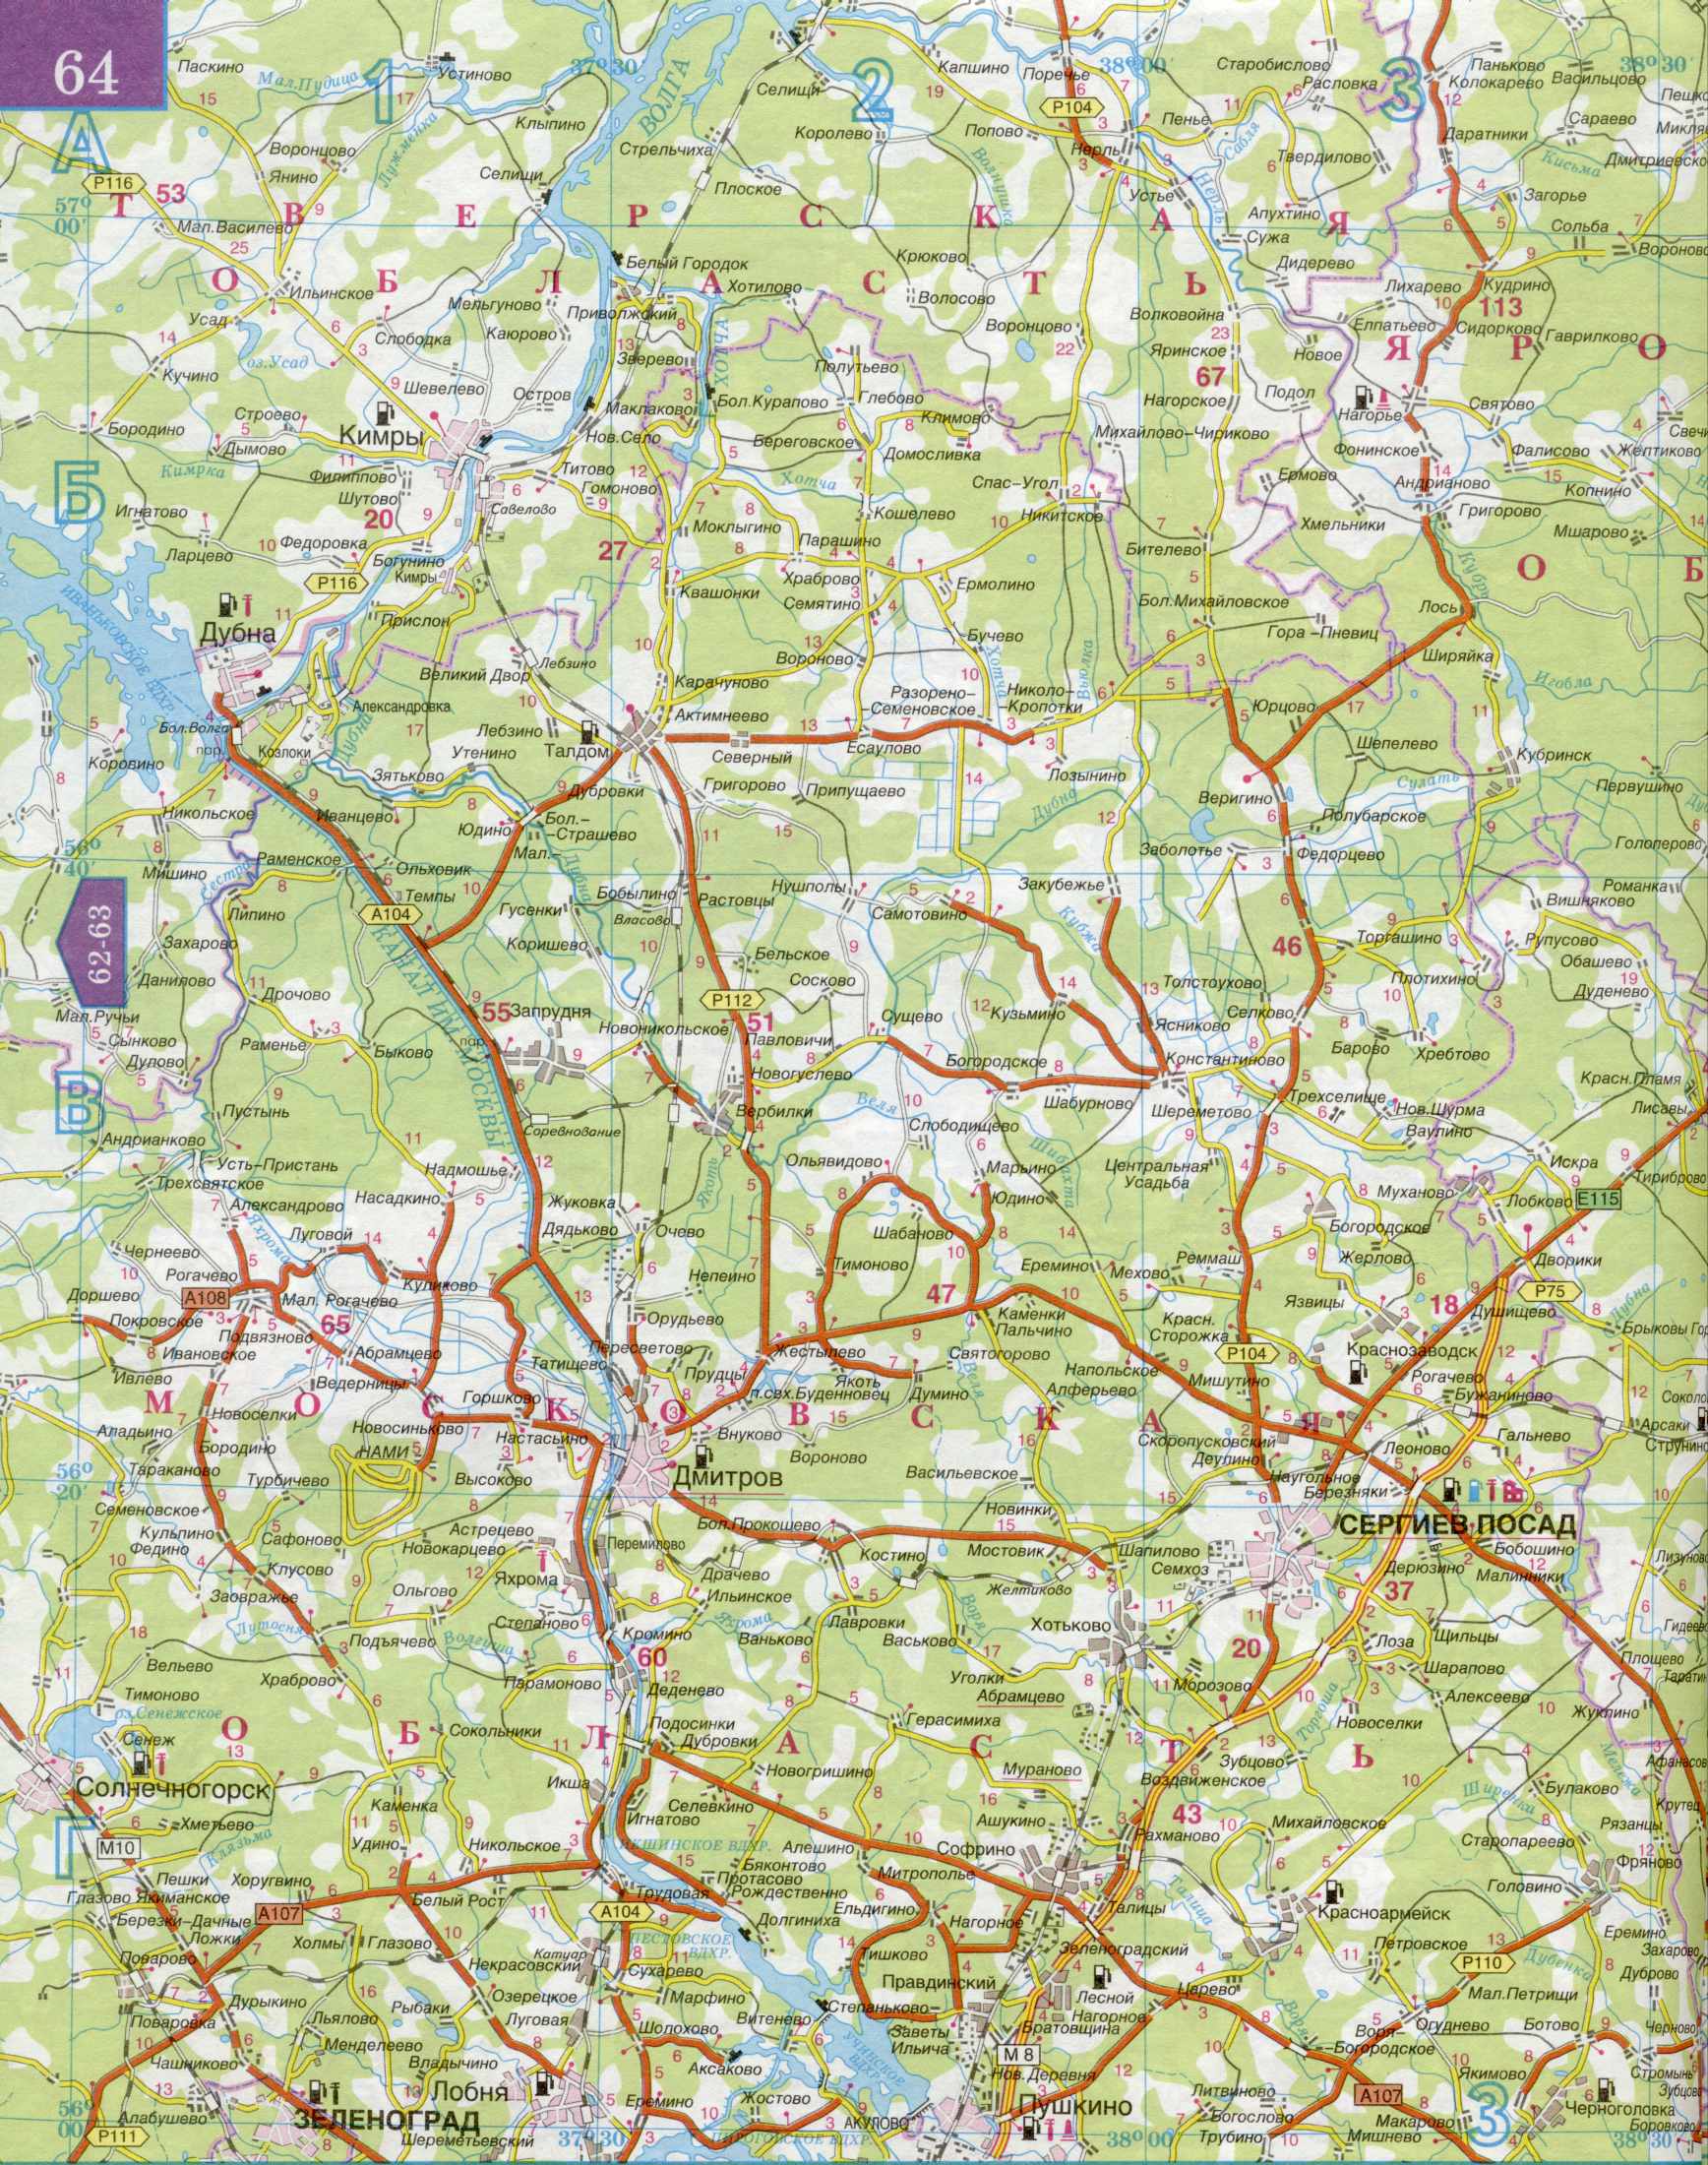 Карта автомобильных дорог Московской области 1см=5км. Подробная карта автомобильных дорог  - Московская область и прилегающие территории. Скачать бесплатно, B0 - 